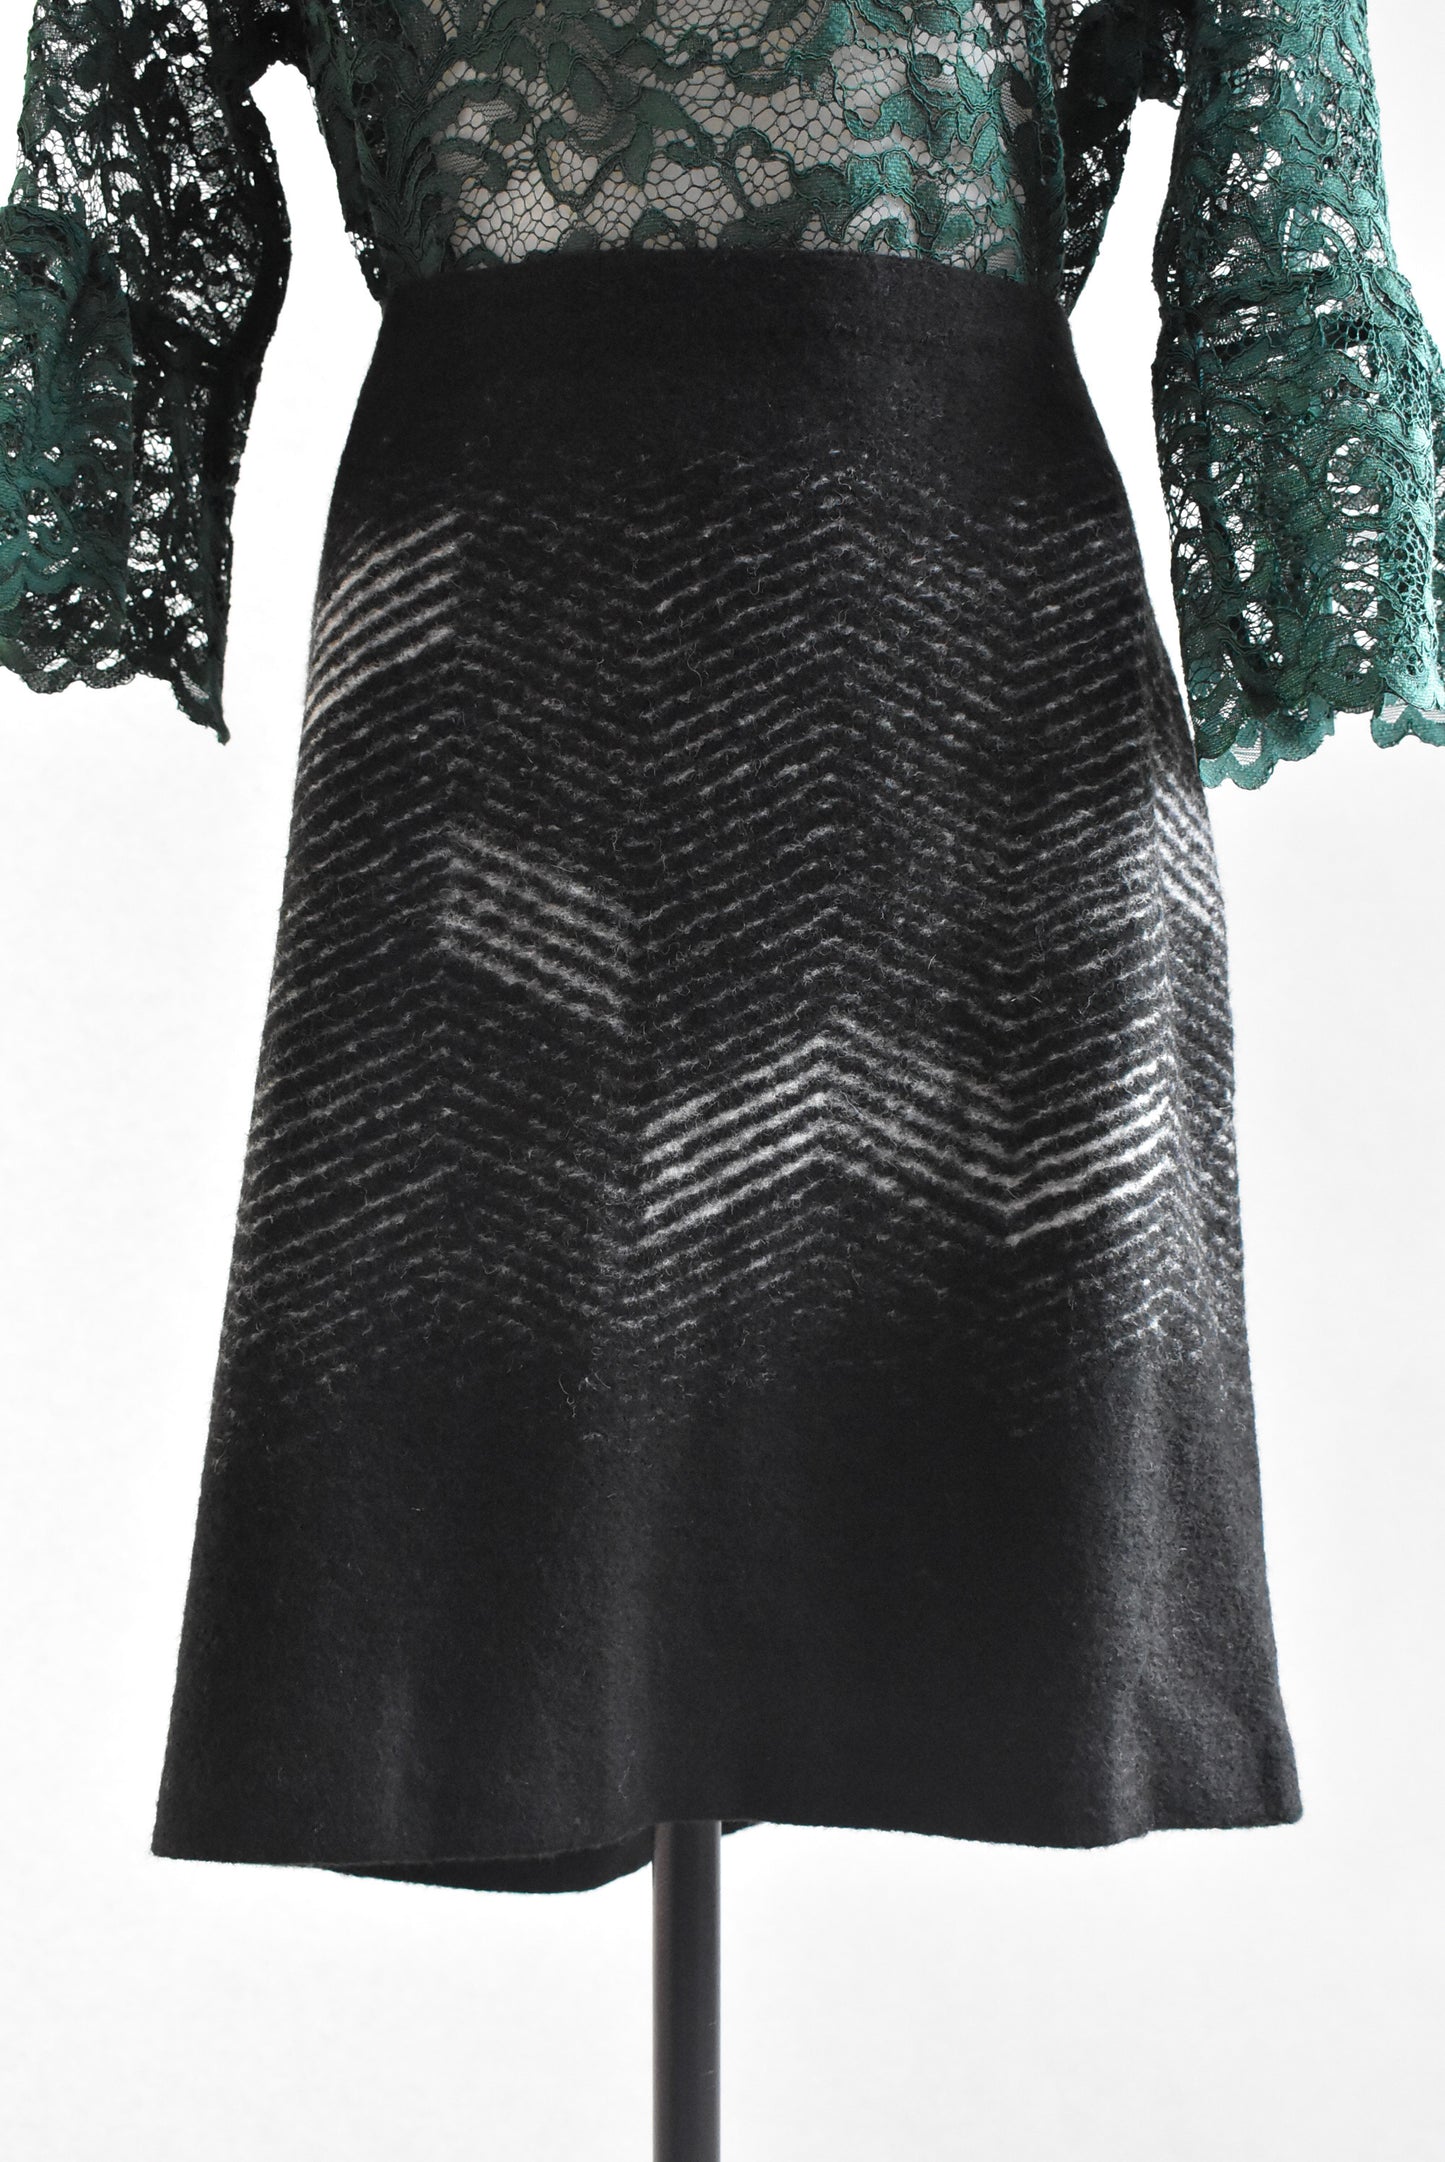 MAX wool blend mini skirt (NEW), 14